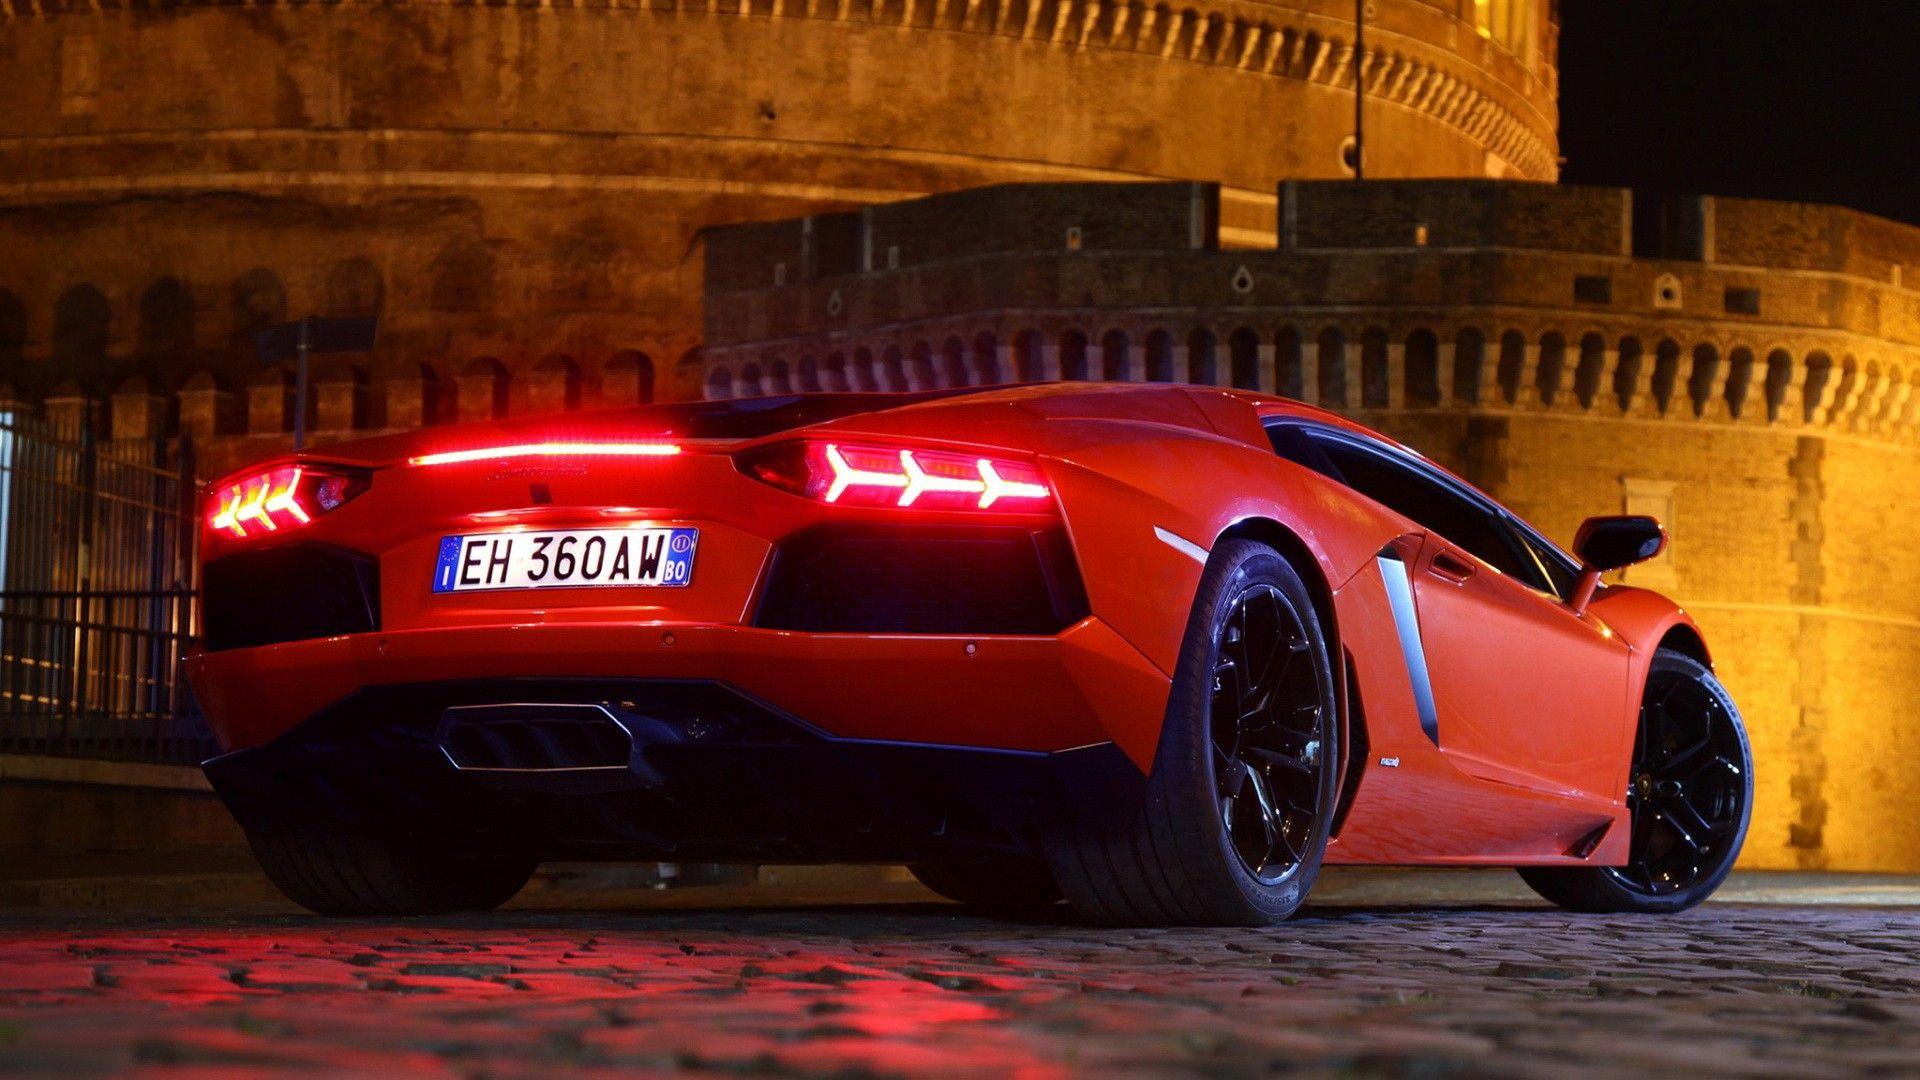 night, cars, Lamborghini, Italy, back view, Lamborghini Aventador